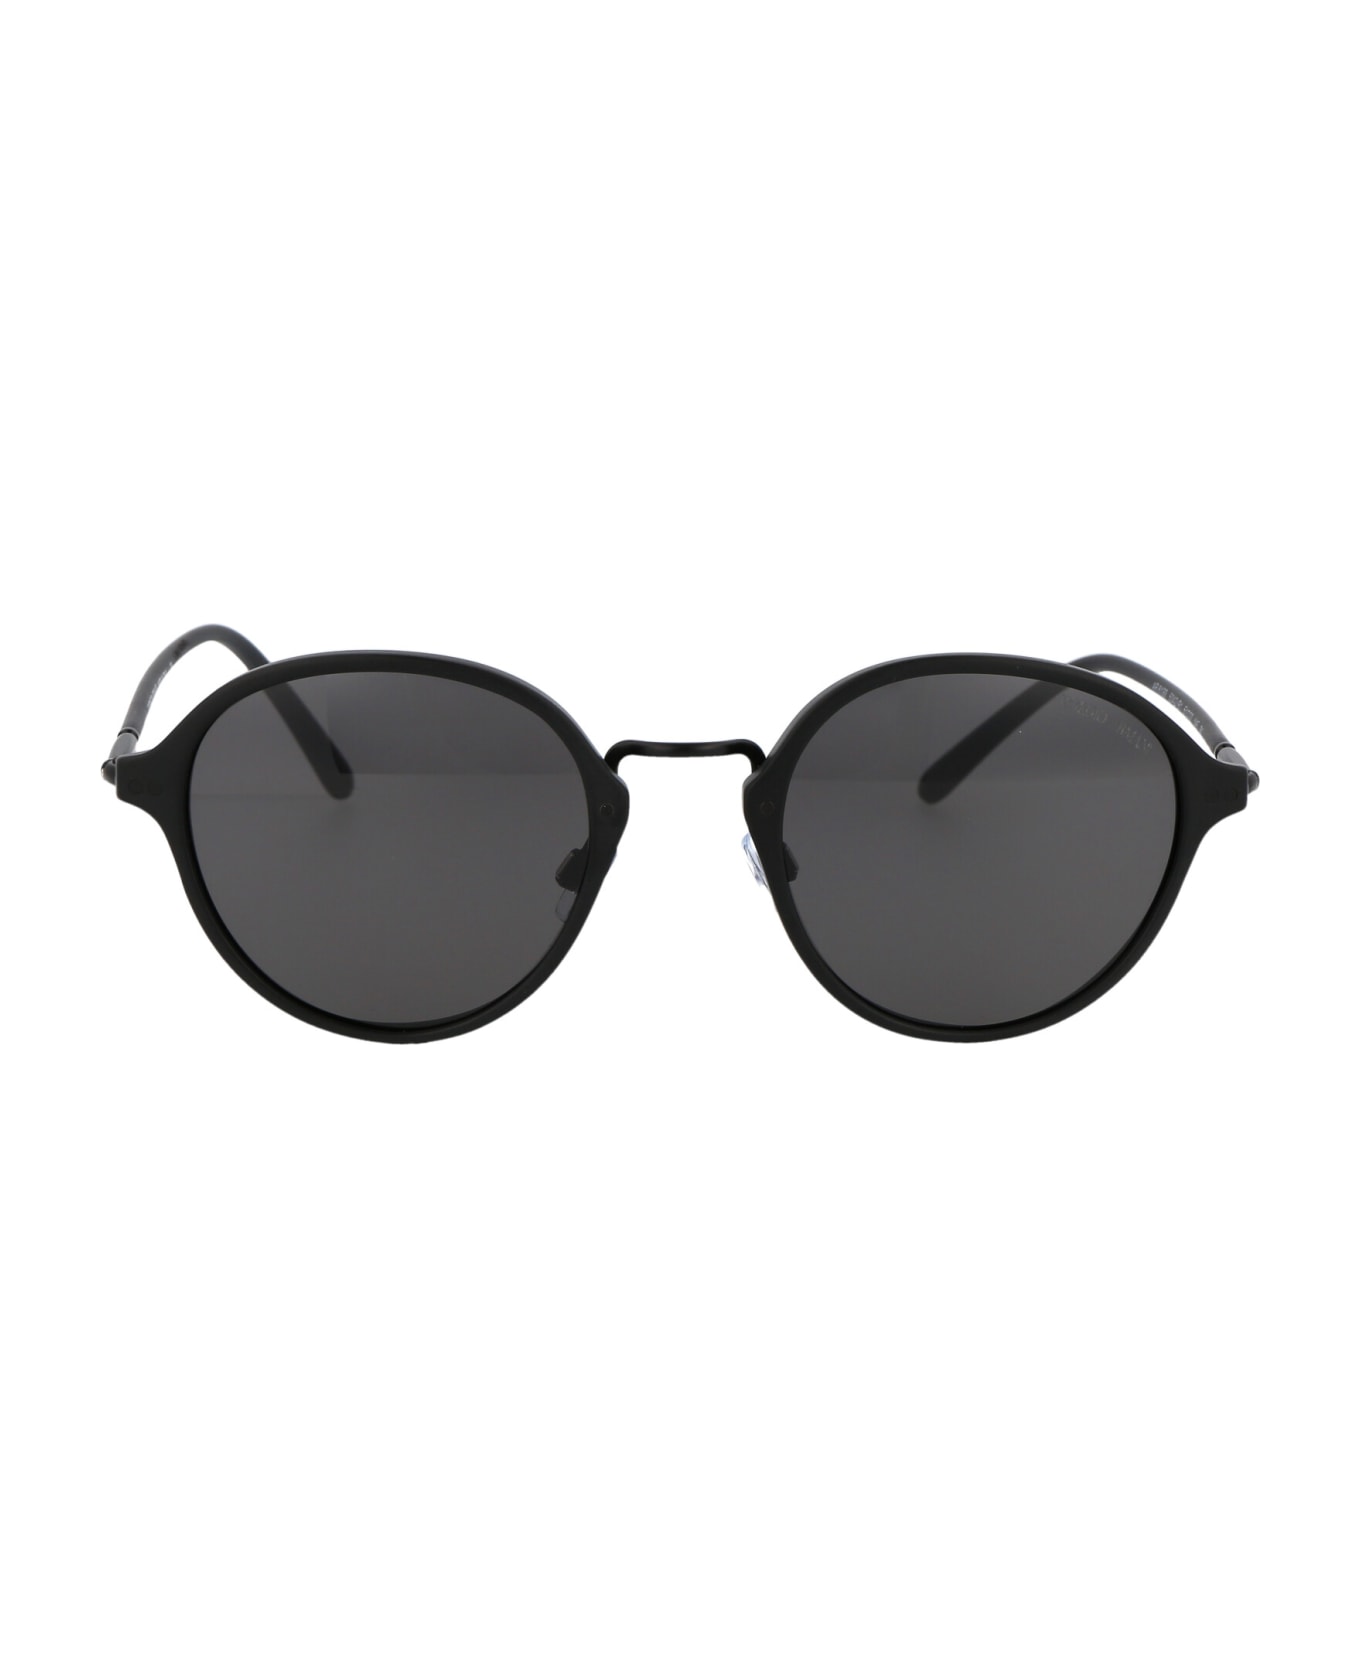 Giorgio Armani 0ar8139 Sunglasses - 5042B1 MATTE BLACK